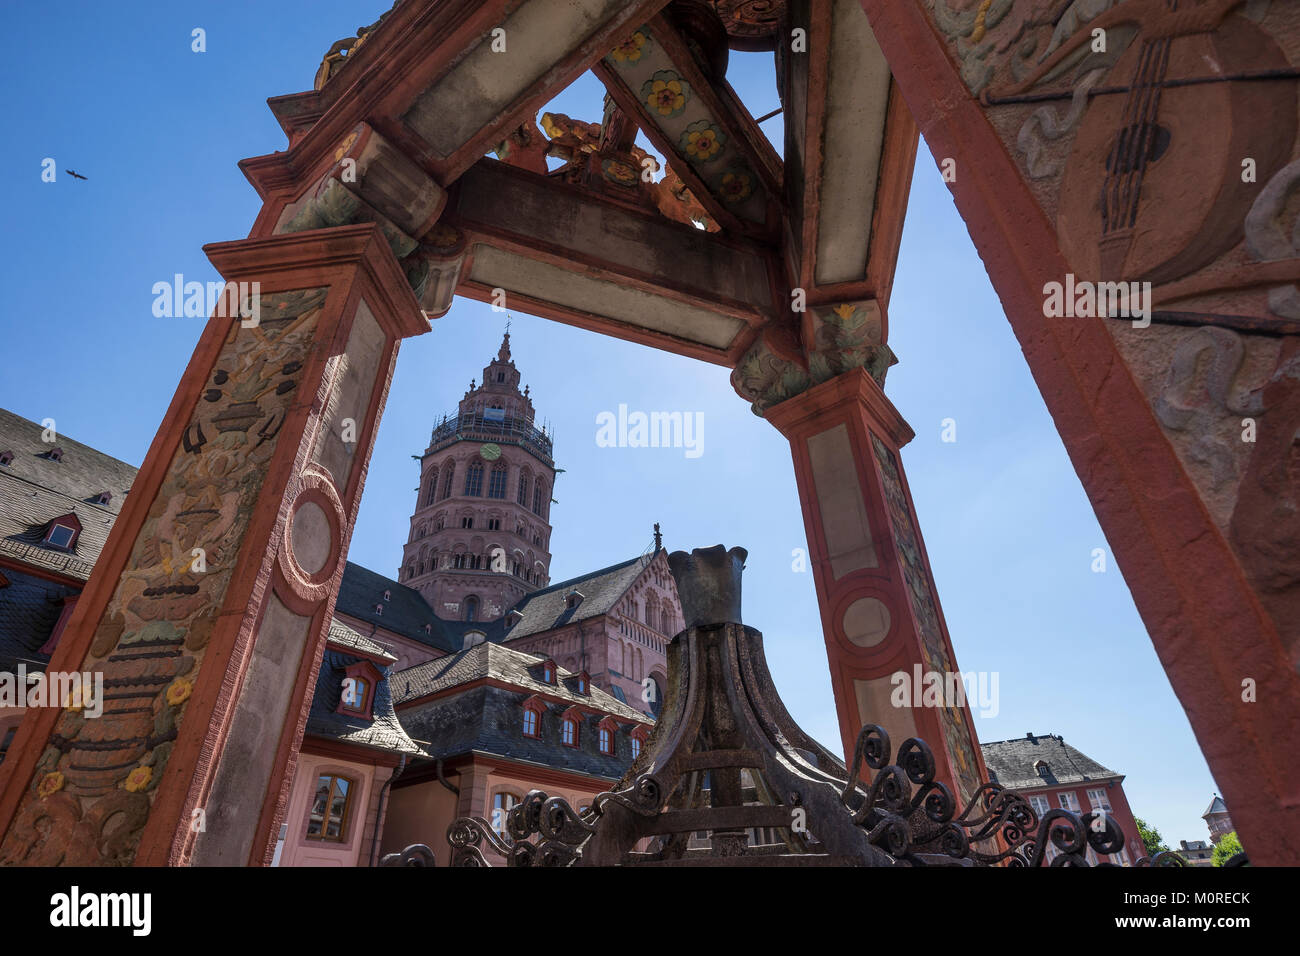 In Germania, in Renania Palatinato, Mainz, la piazza del mercato, fontana, Cattedrale di Magonza in background Foto Stock